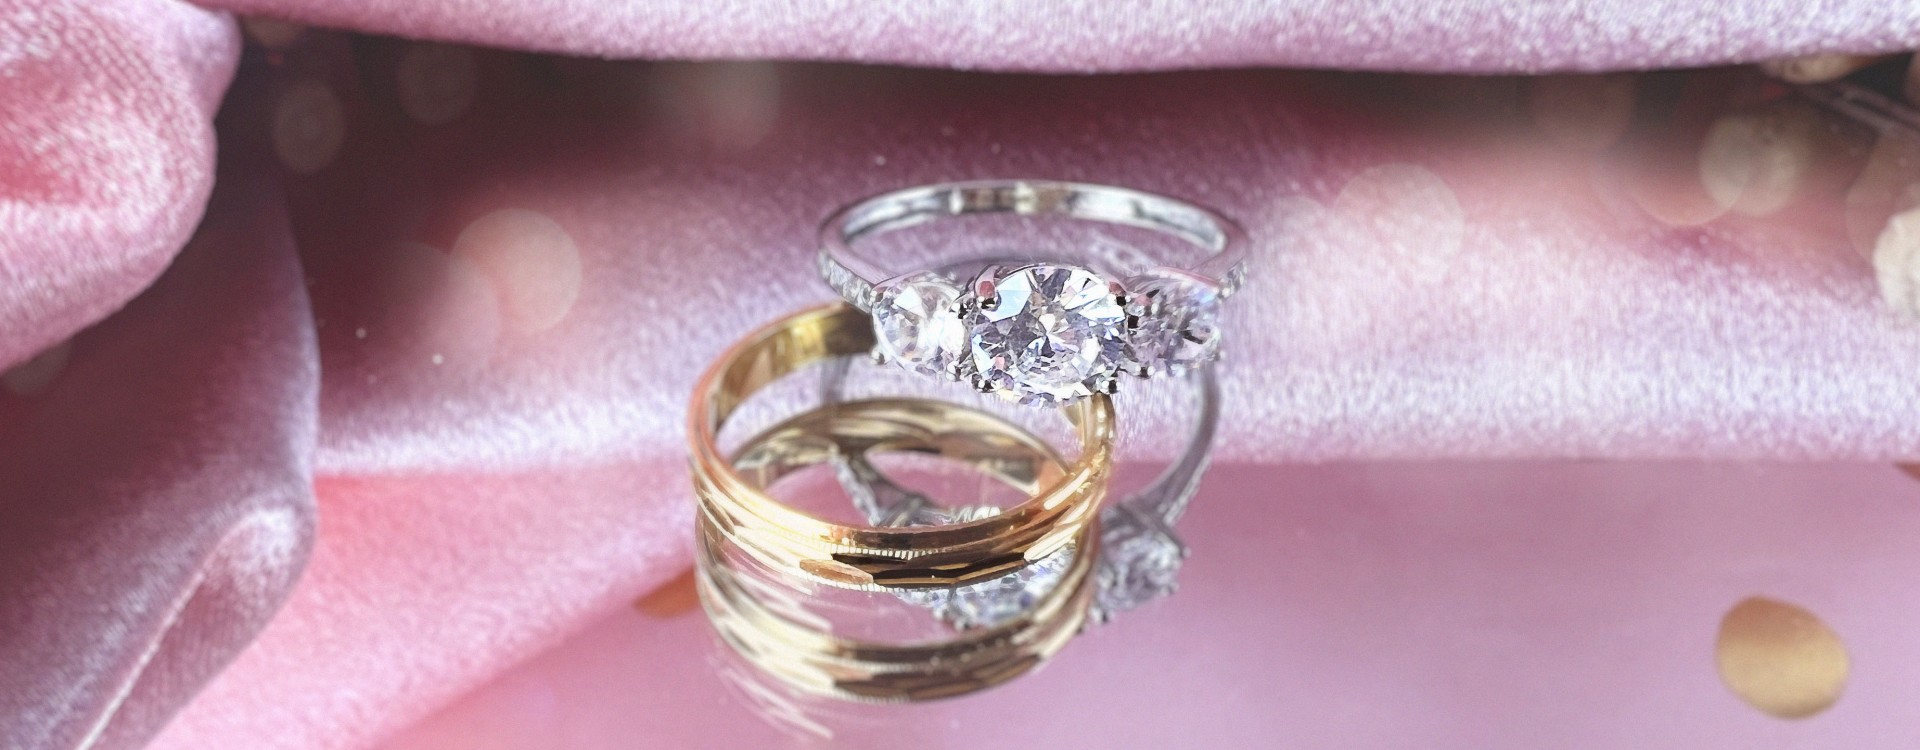 Dónde se pone el anillo de casado? ¿Y el de compromiso?